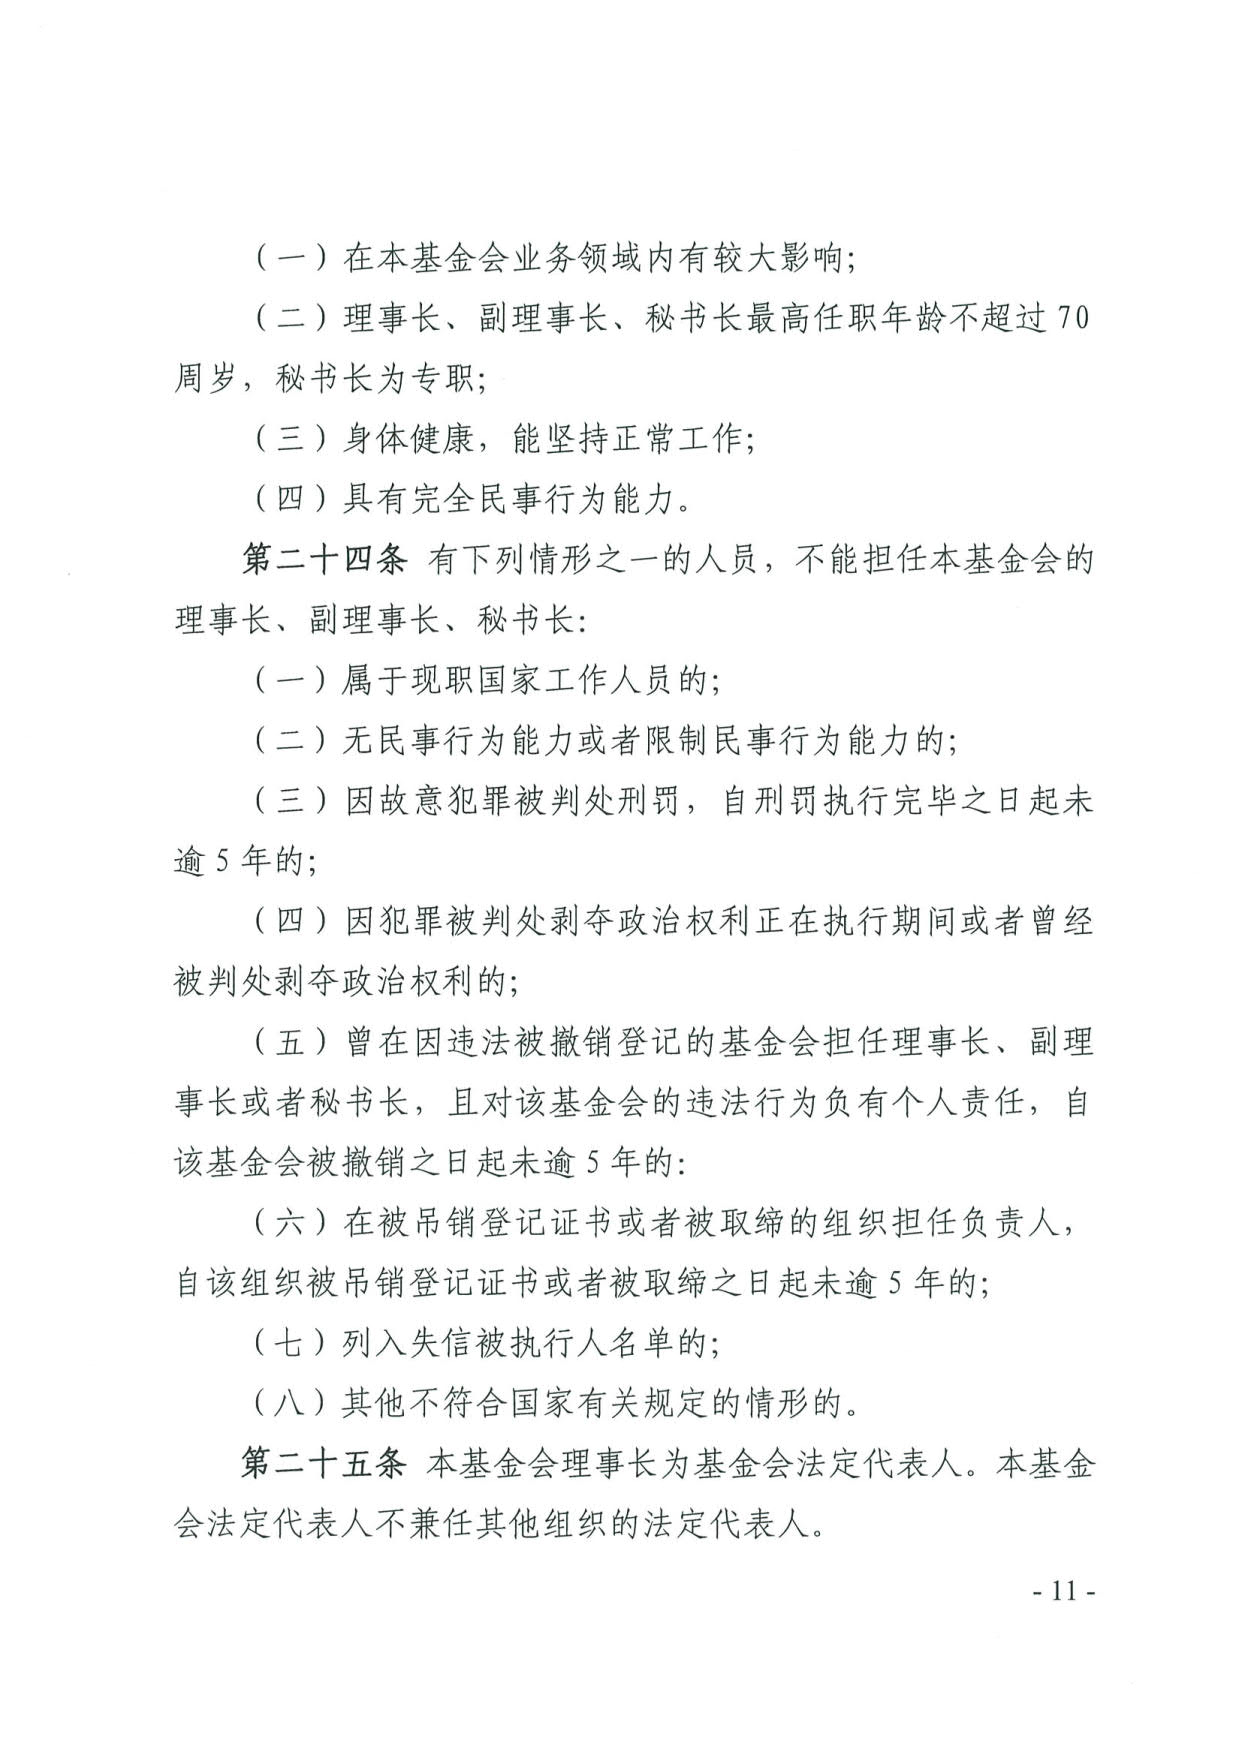 广东省民政厅关于印发《广东省基金会章程示范文本》的通知(4)_11.jpg